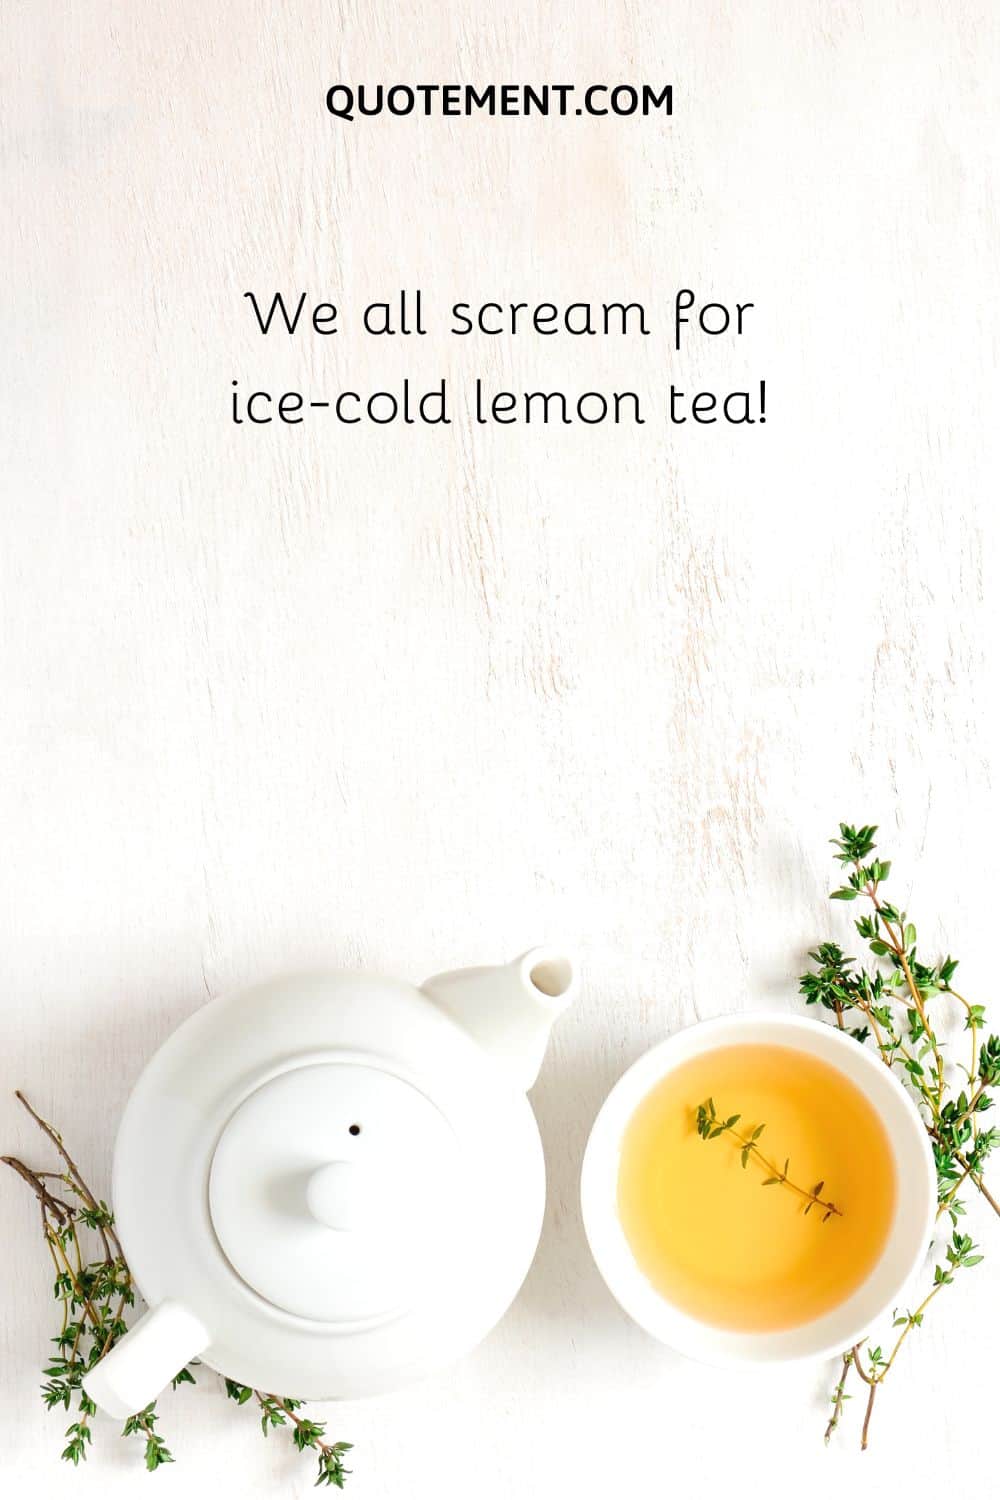 We all scream for ice-cold lemon tea!